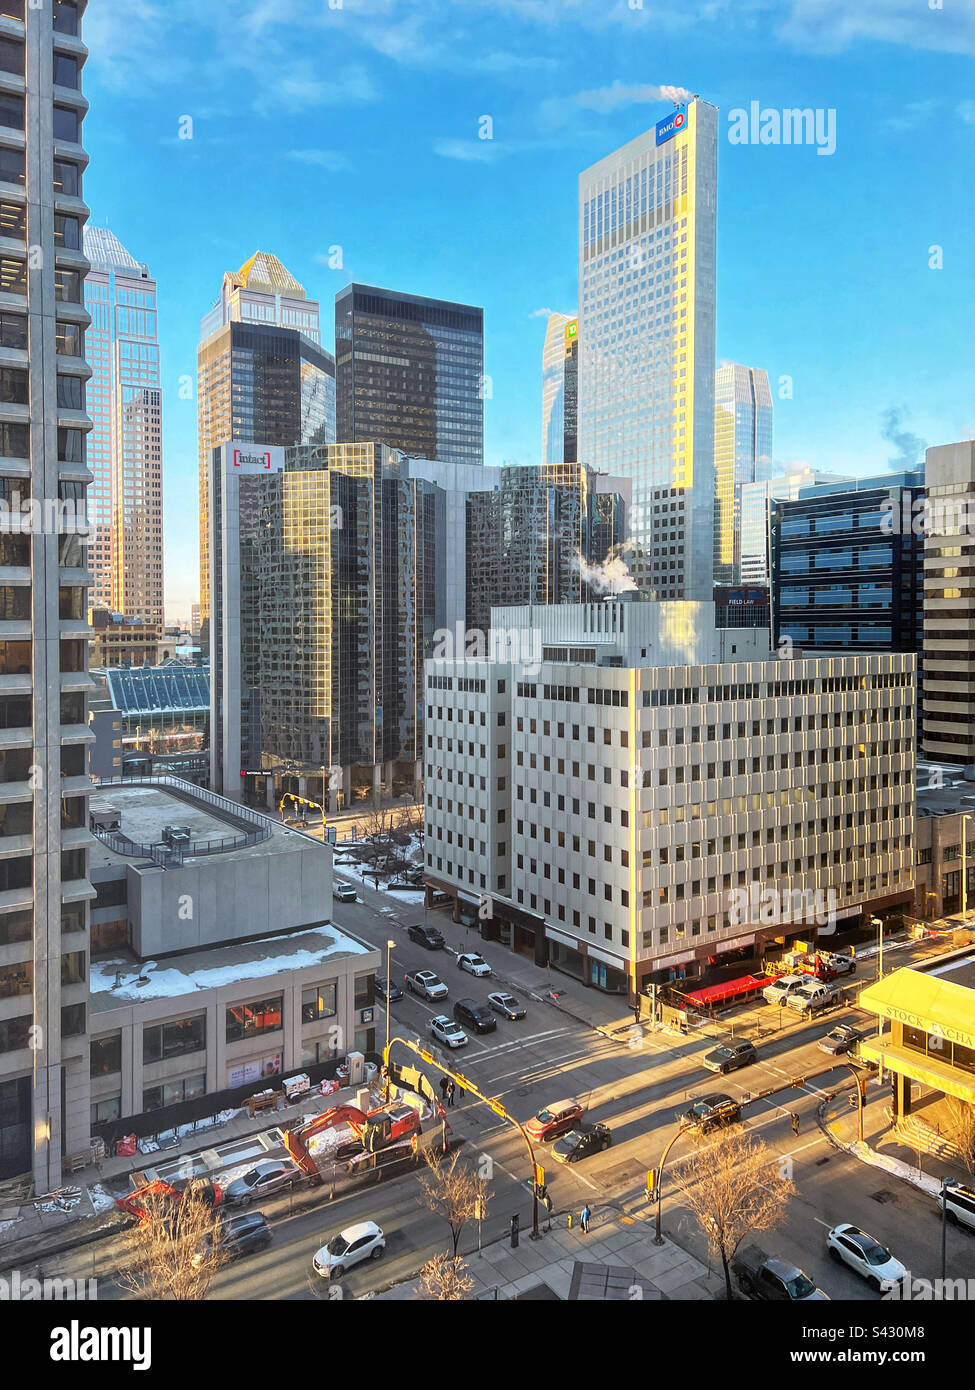 Les gratte-ciel et la circulation du centre-ville de Calgary baignaient dans la lumière dorée du lever du soleil. Banque D'Images